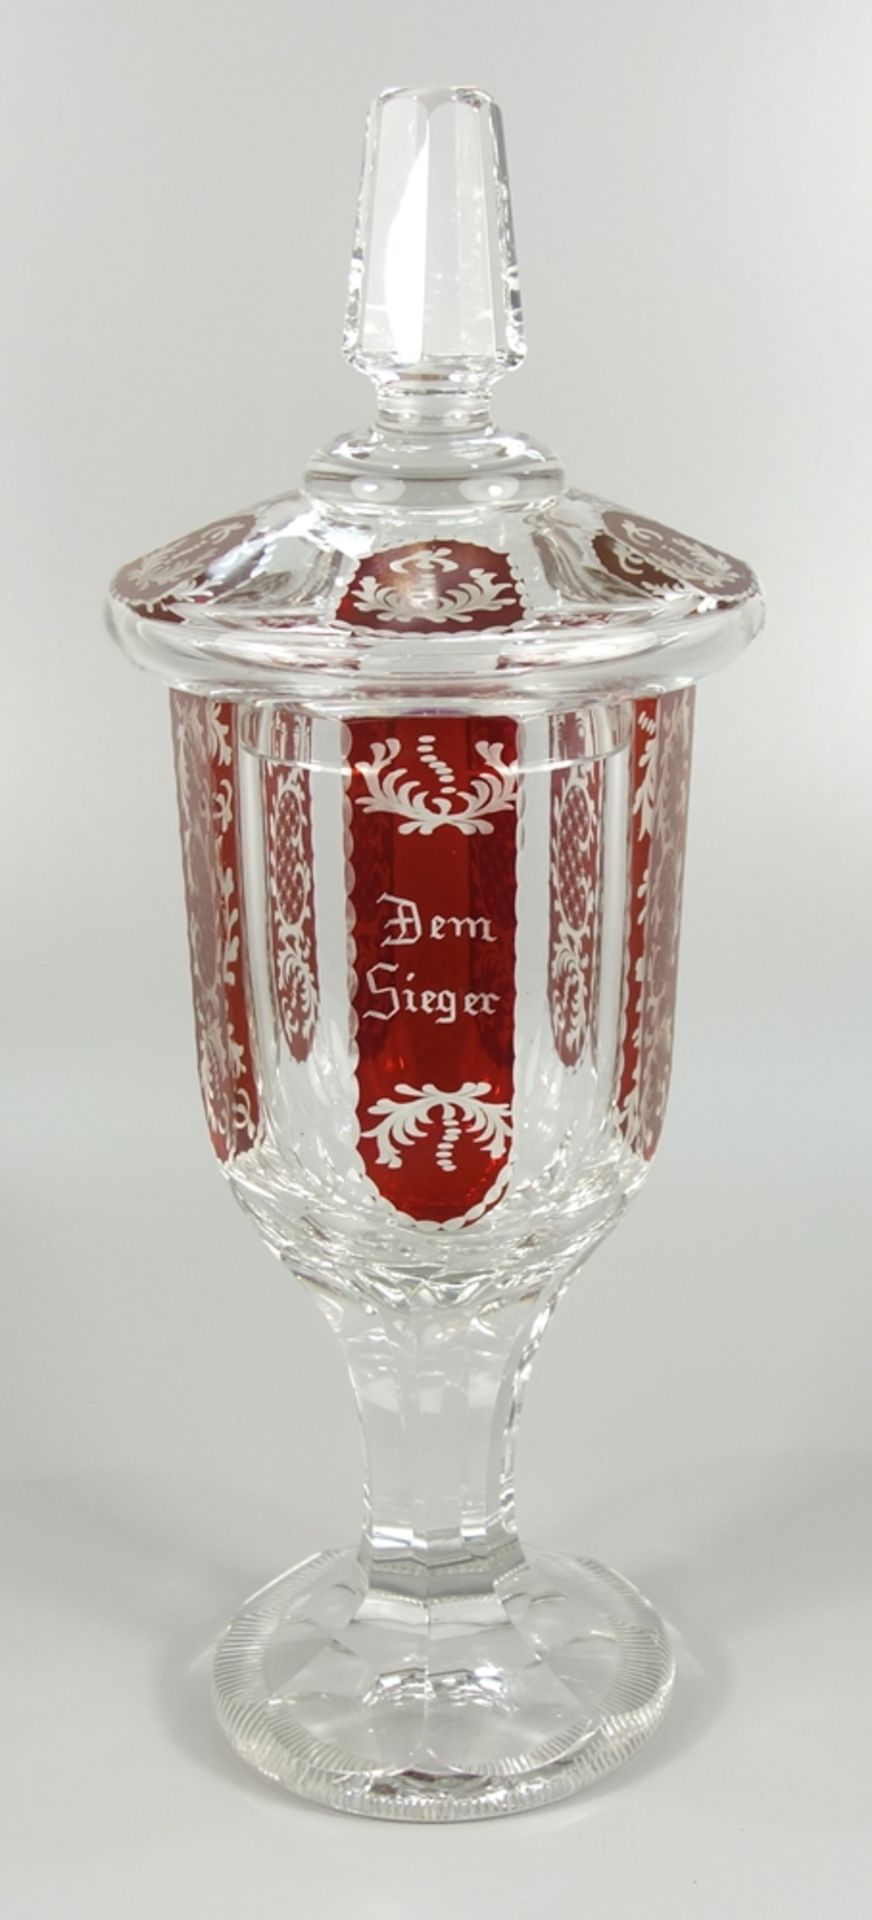 Deckelpokal "Dem Sieger", Böhmen, um 1930, Kristallglas, Vollglasstand mit Kerbschliff, Schaft mit